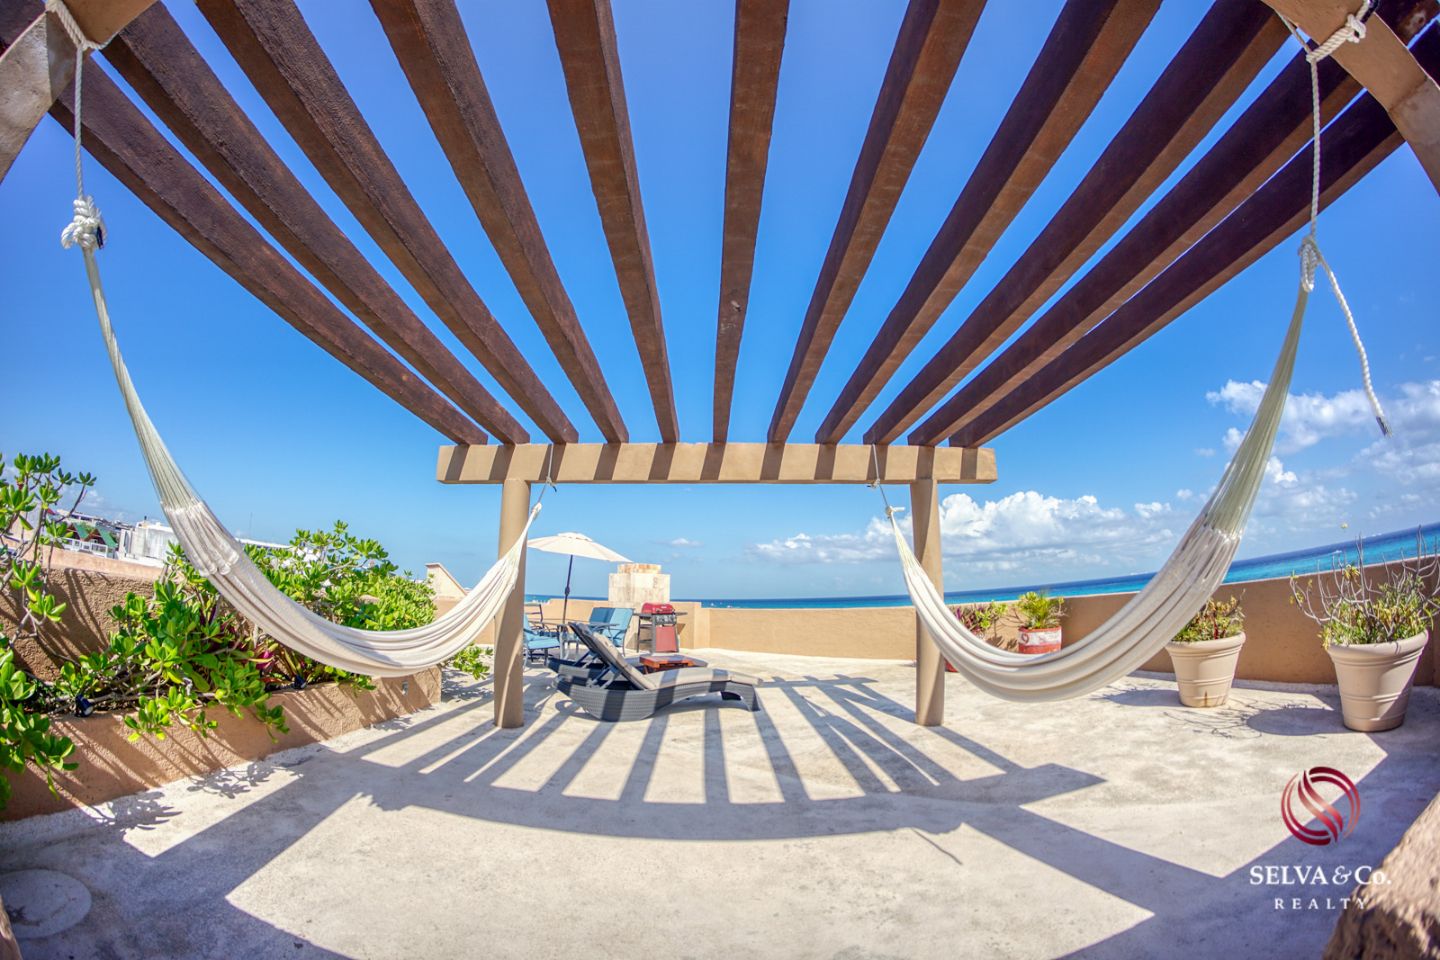 Penthouse frente al mar con jacuzzi, 2 terrazas, acceso a mar, club de playa, gimnasio, business center, concierge  y mas en venta Playa del